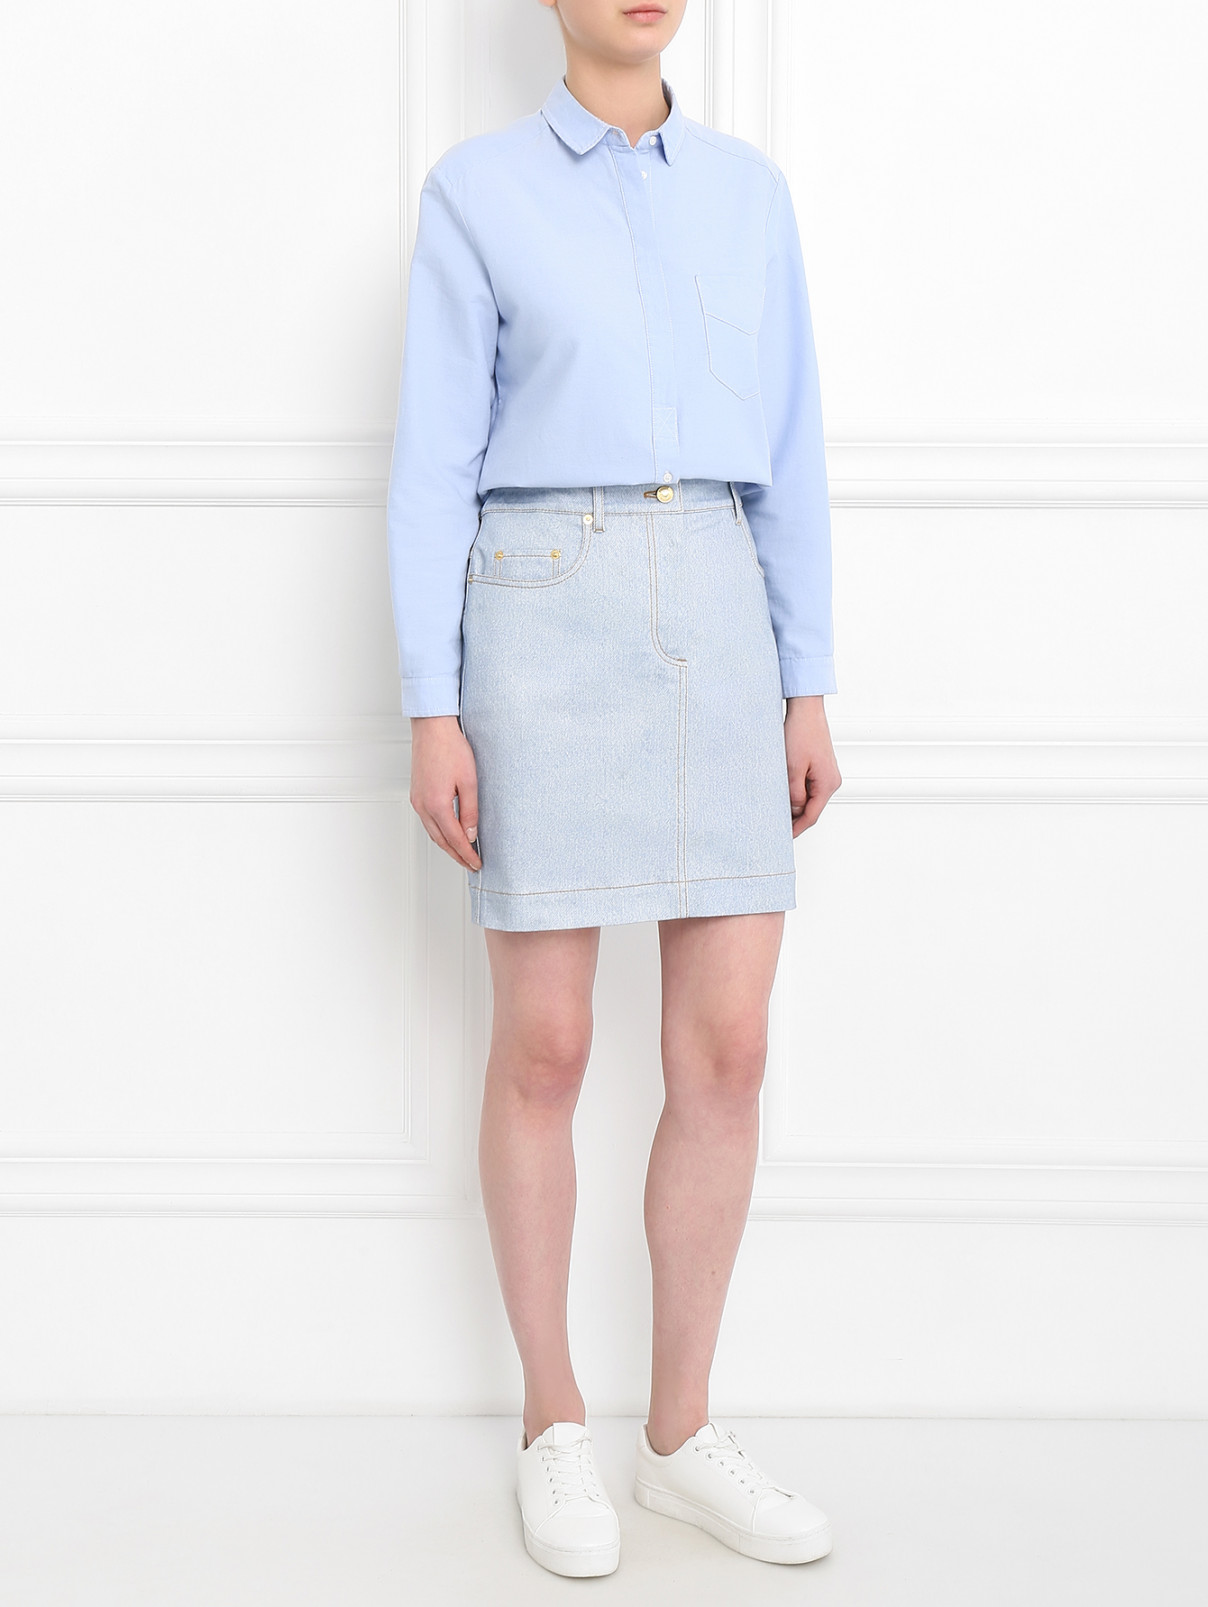 Юбка-мини из светлого денима Moschino Couture  –  Модель Общий вид  – Цвет:  Синий